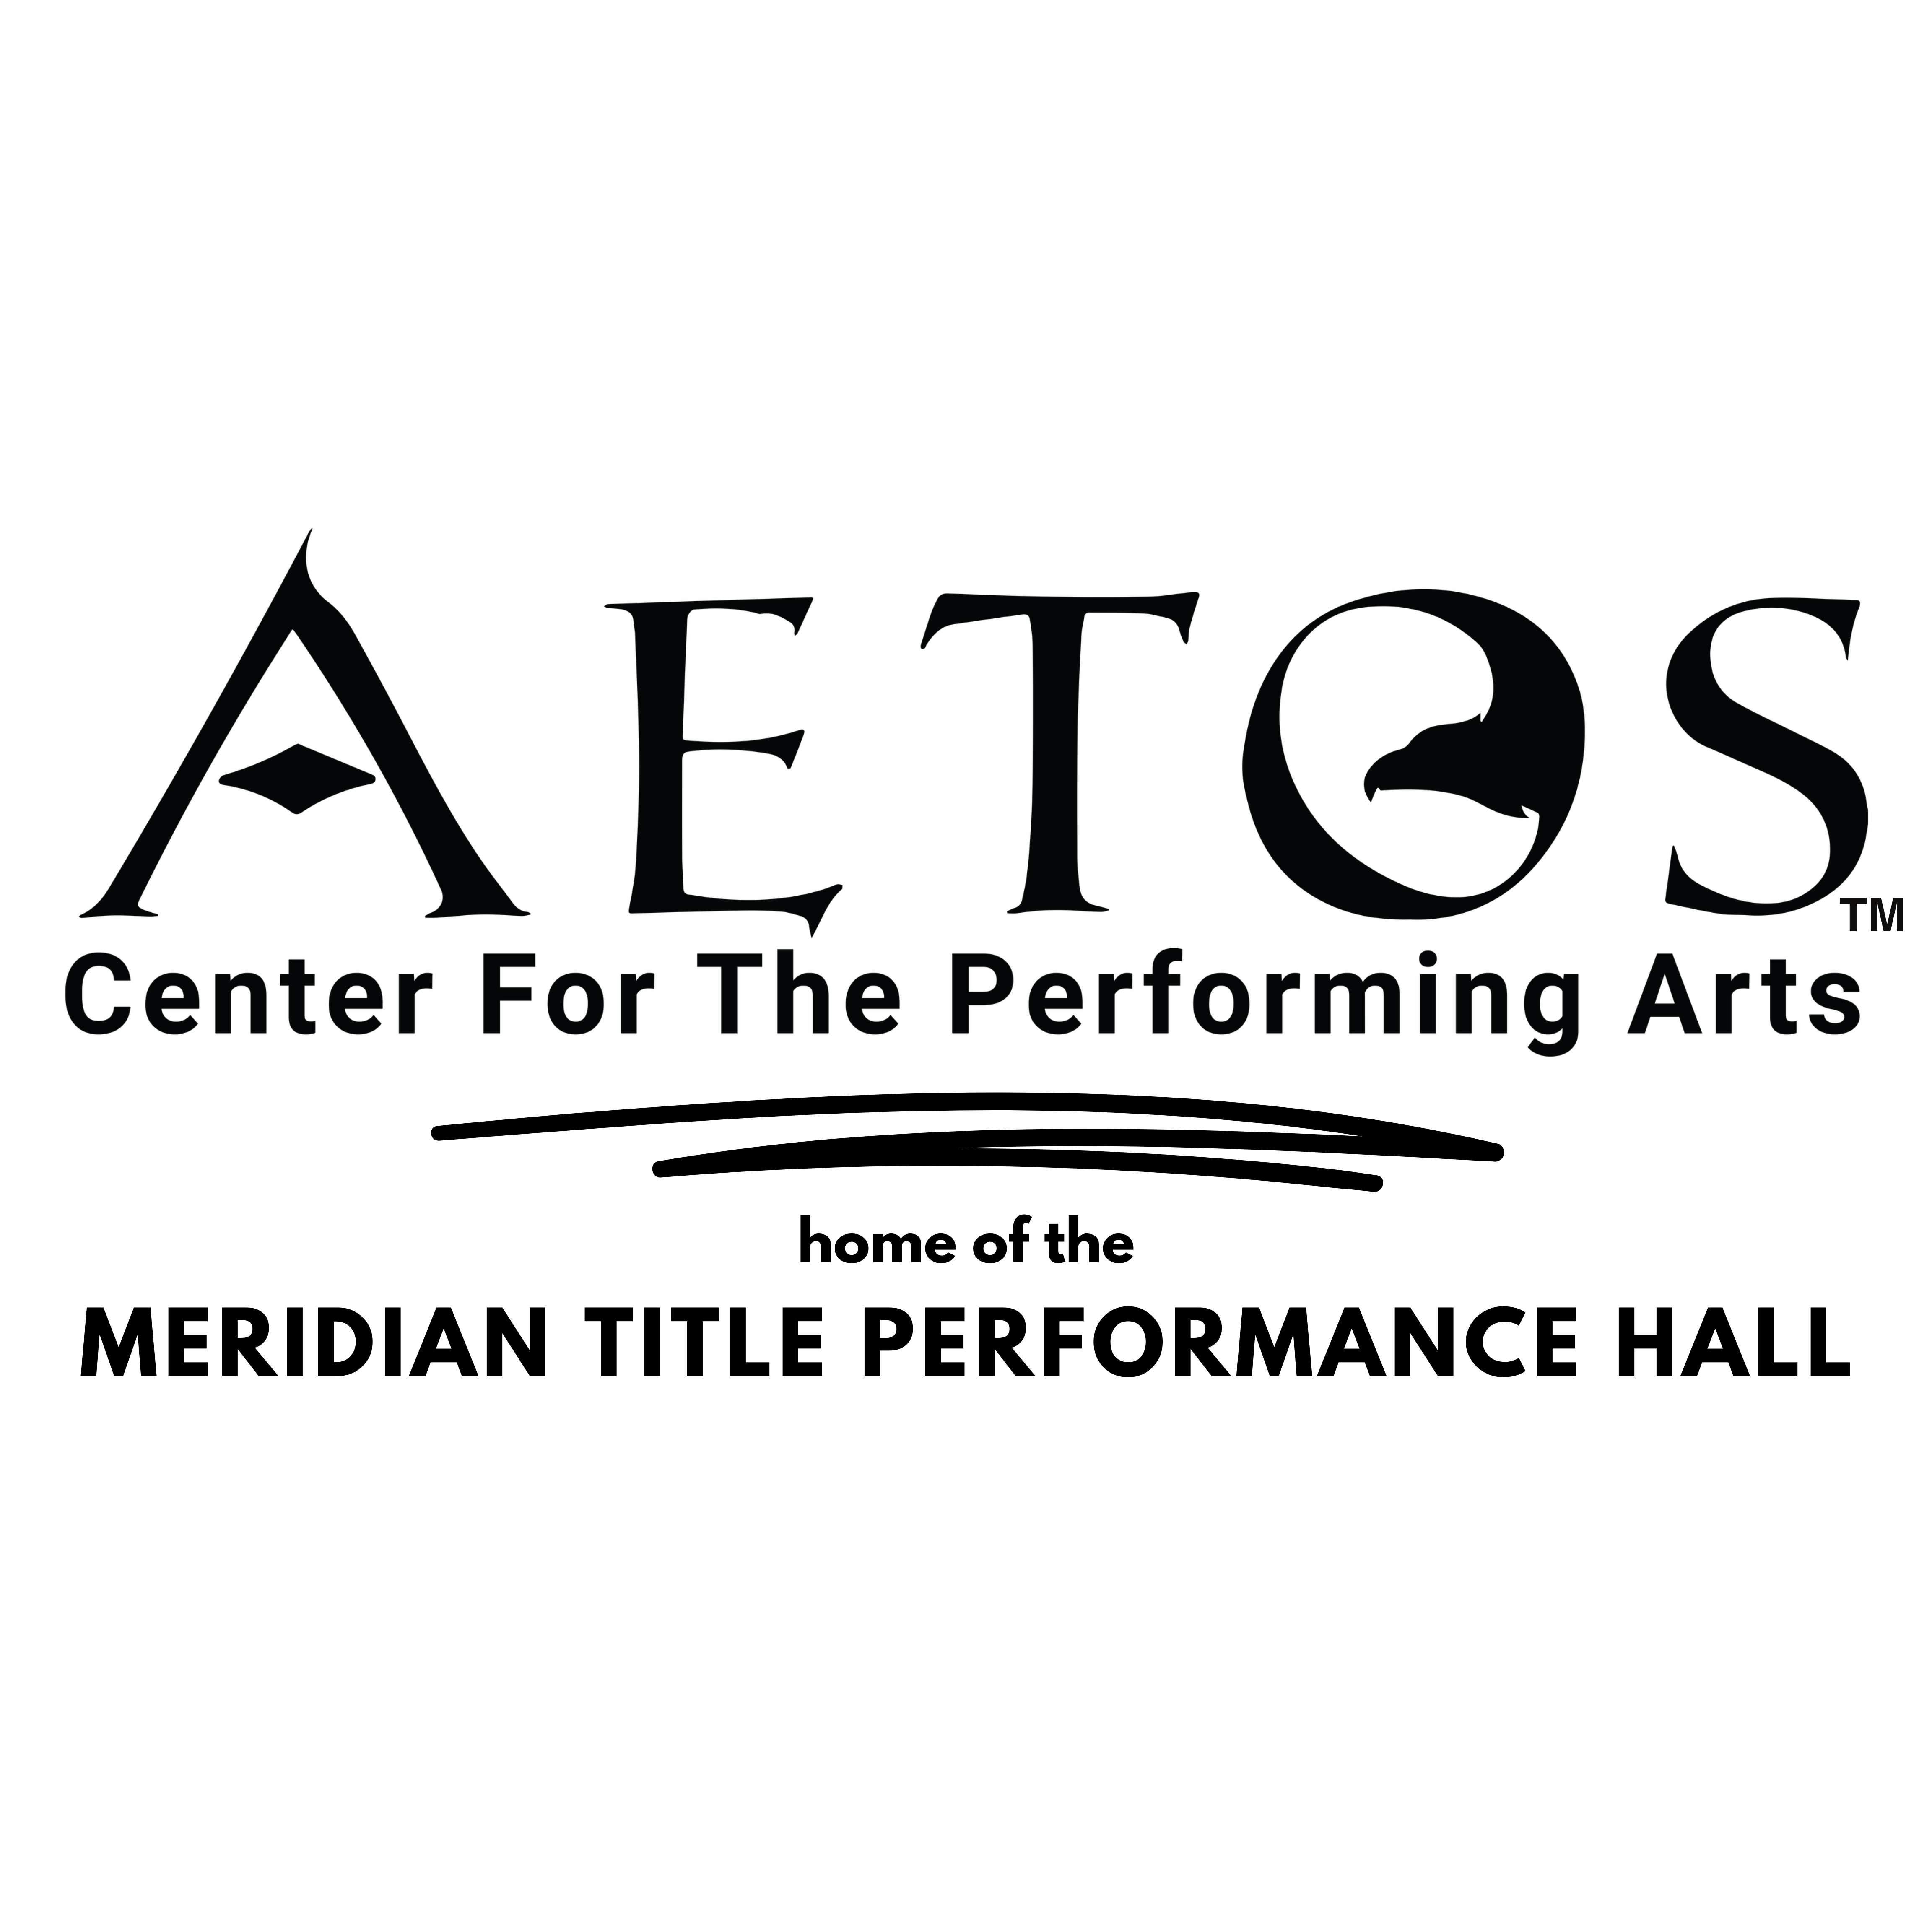 Aetos logo